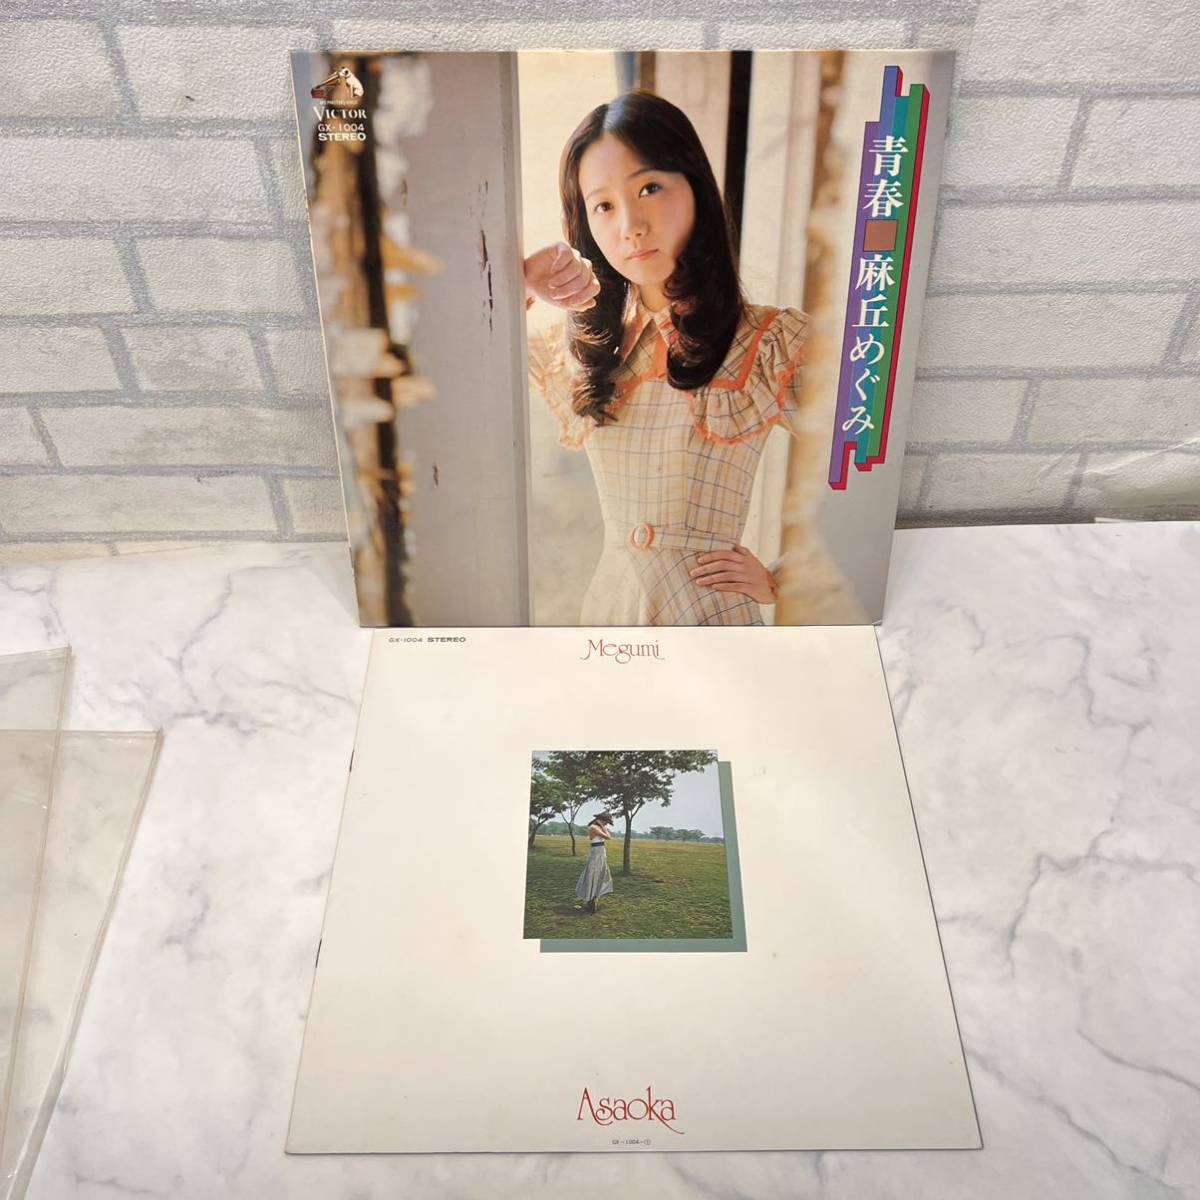 美盤 レコード盤 LP ヴィンテージ GX-1004 青春 麻丘めぐみの画像1